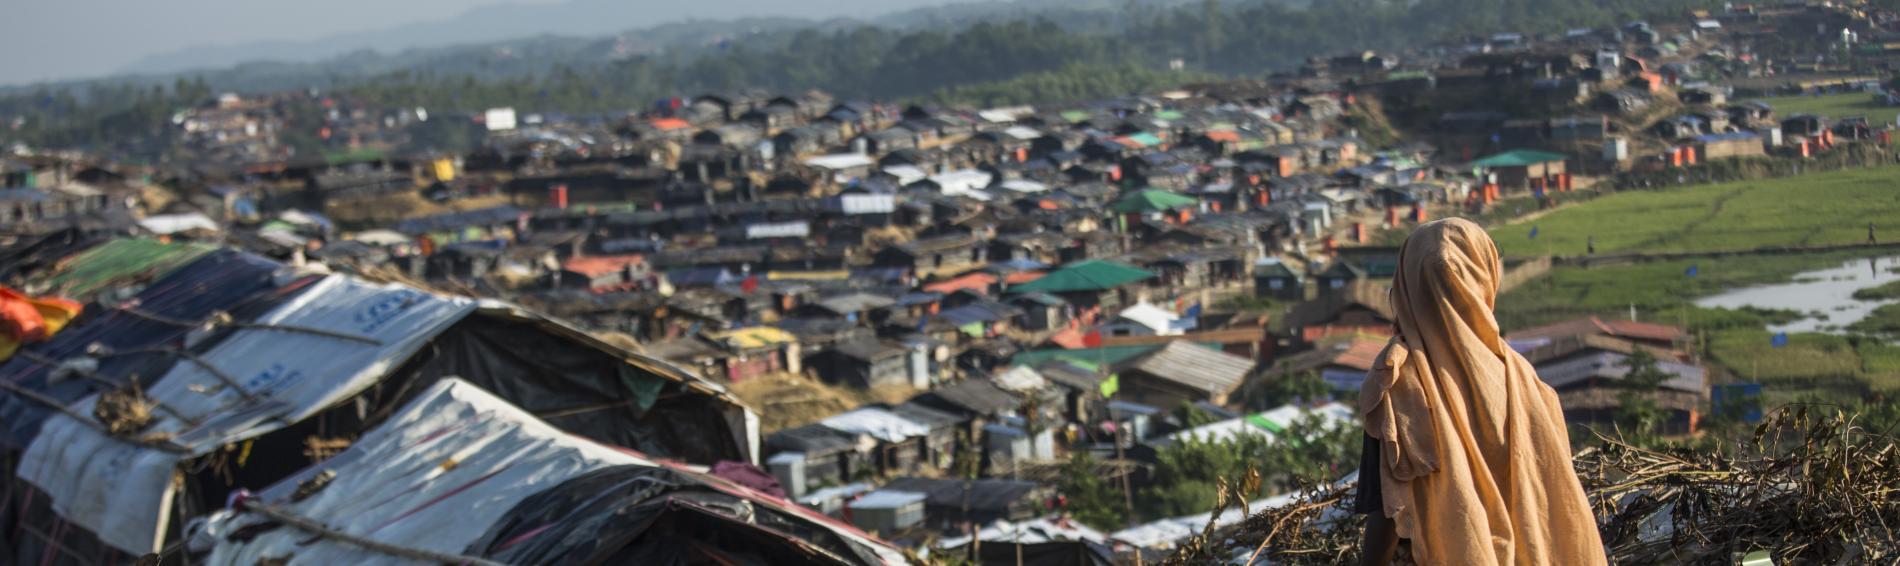 Die Rohingya in den Camps kämpfen für ihre Rechte. Foto: Arnaud Finistre